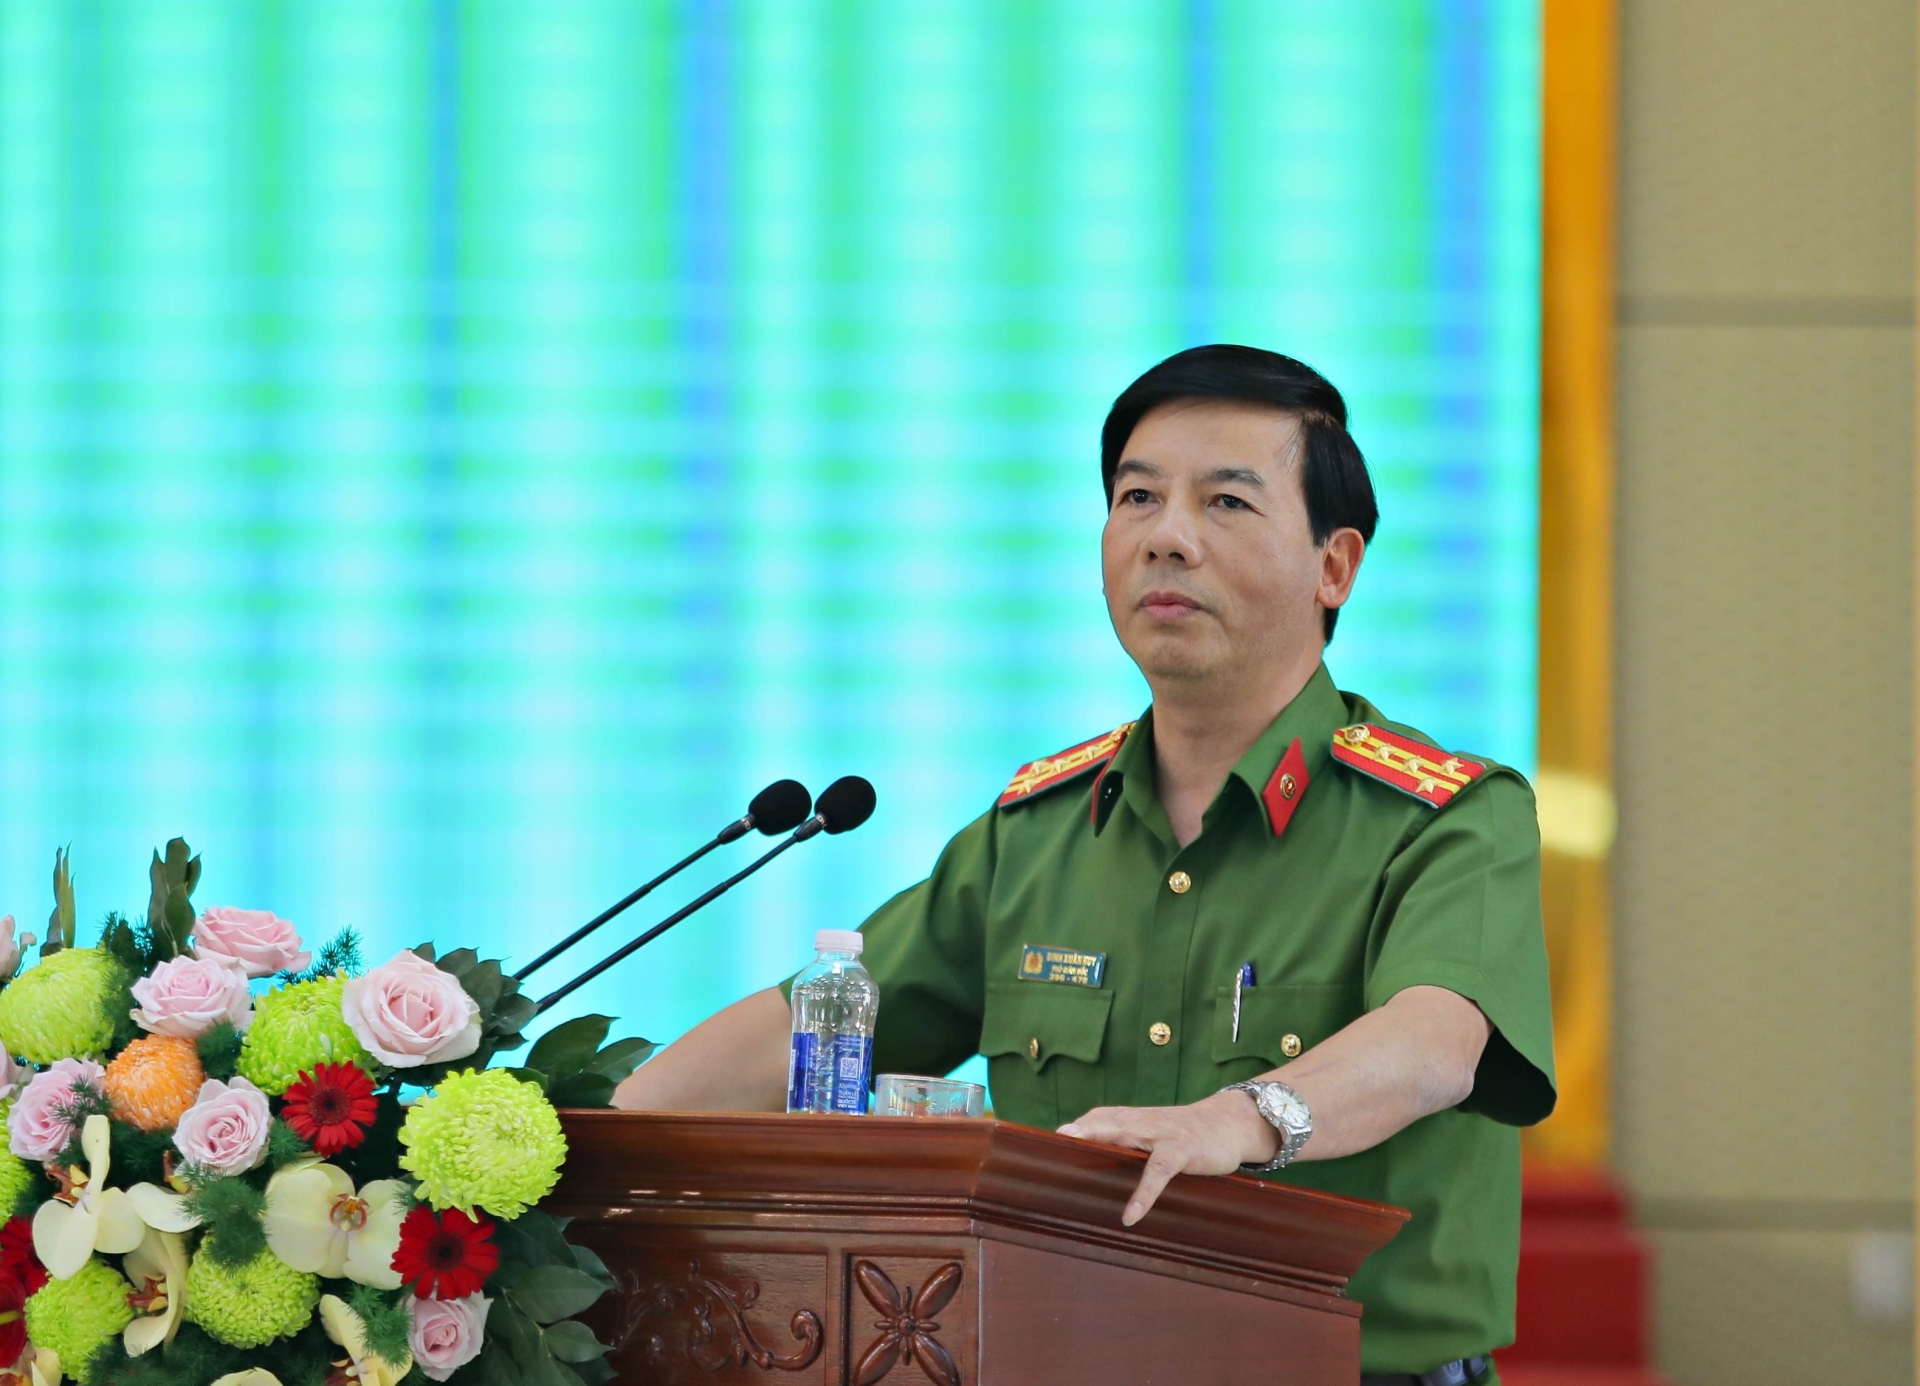 Đại tá Đinh Xuân Huy, Phó Giám đốc Công an tỉnh Lâm Đồng báo cáo thêm về tình hình an ninh trật tự tại địa phương thời gian qua